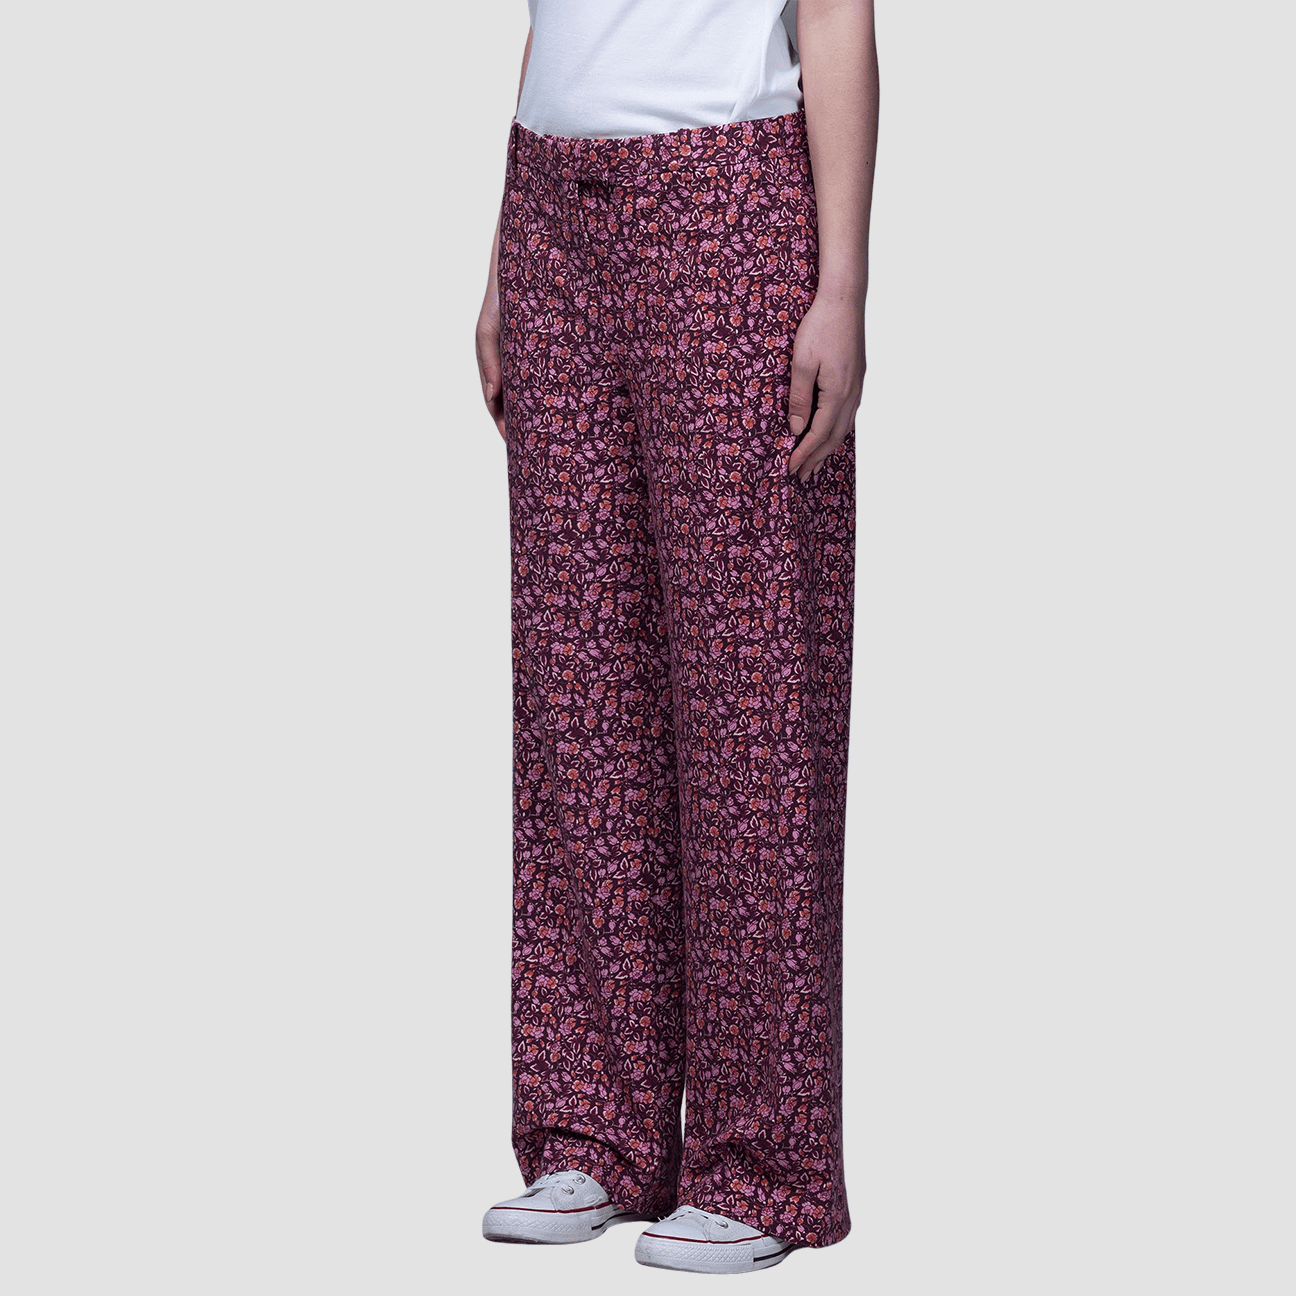 CIRCOLO1901 Pantalone stampa floreale Lilla Multi